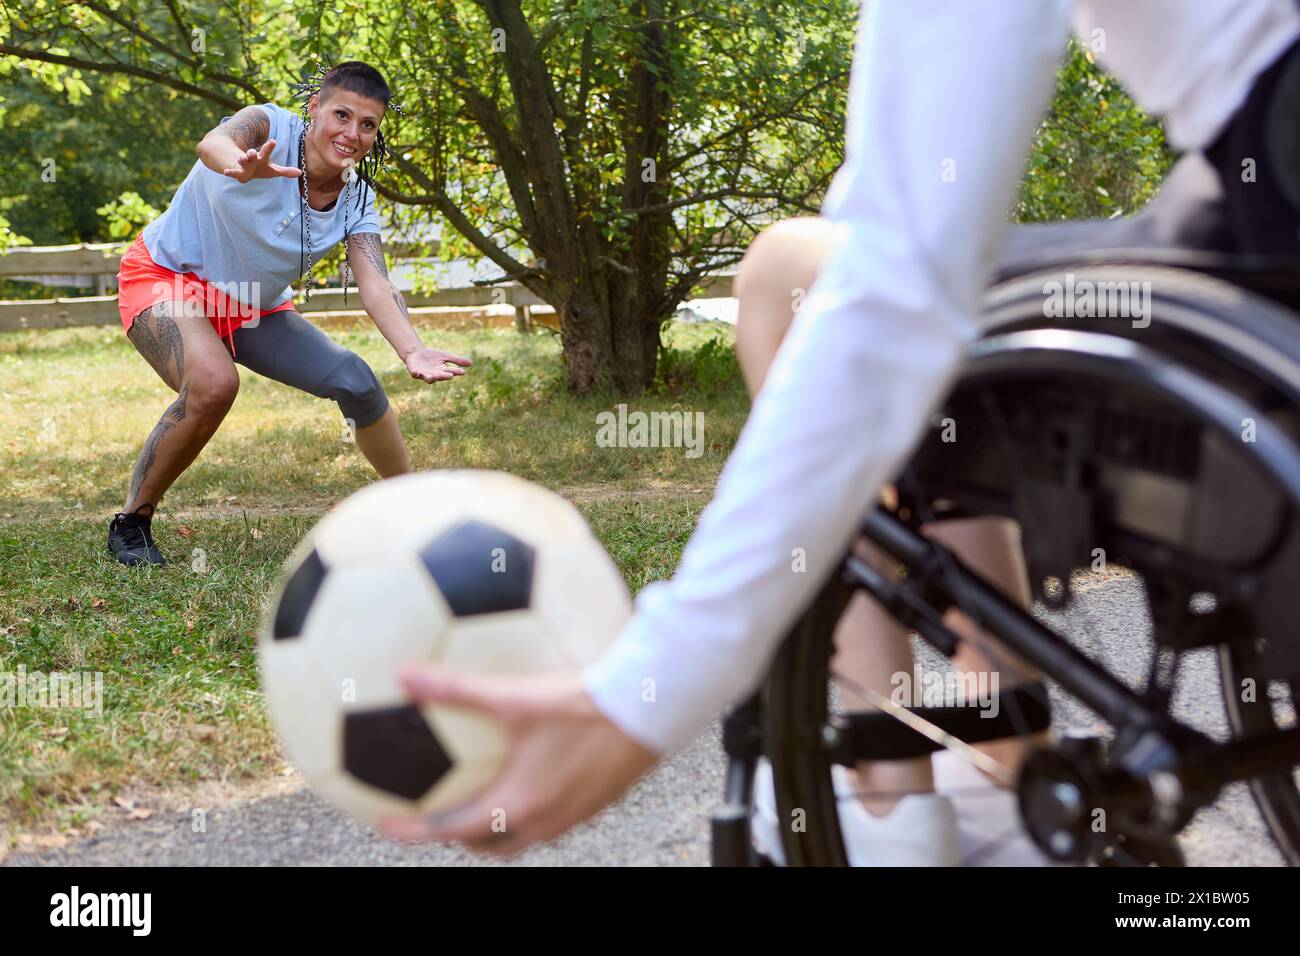 Eine fesselnde Szene, in der eine Person im Rollstuhl sitzt und Freunde im Freien Fußball spielen, die Freude, Inklusion und adaptive Sportarten zeigen. Stockfoto